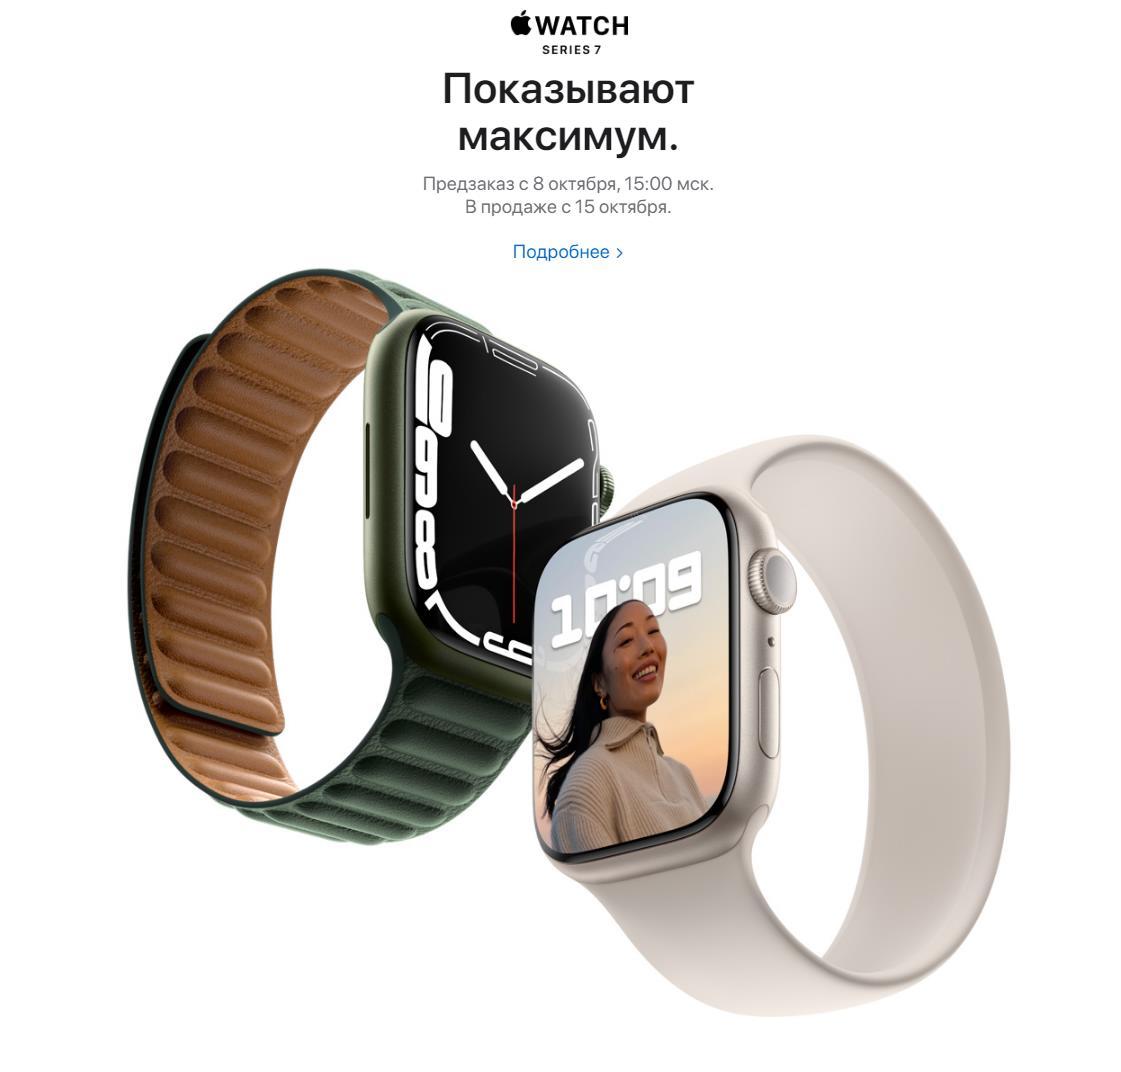 Apple Watch Series 7 поступят в продажу 15 октября. Предзаказ 8 октября 